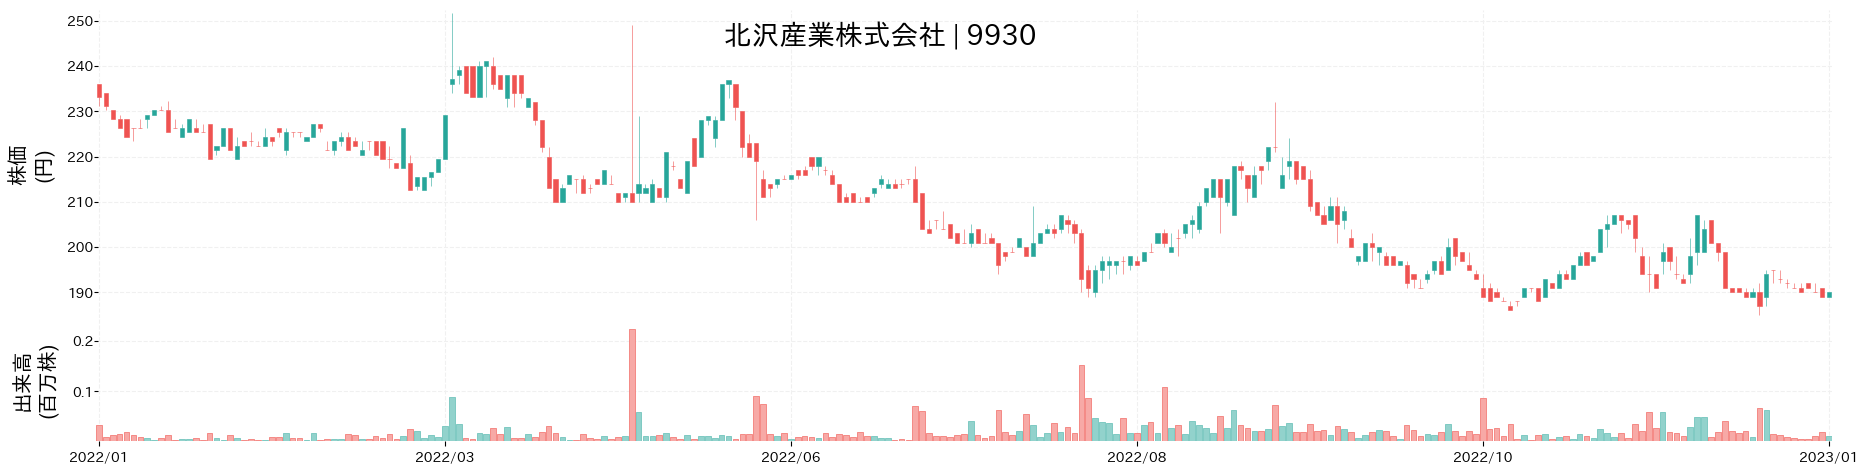 北沢産業の株価推移(2022)